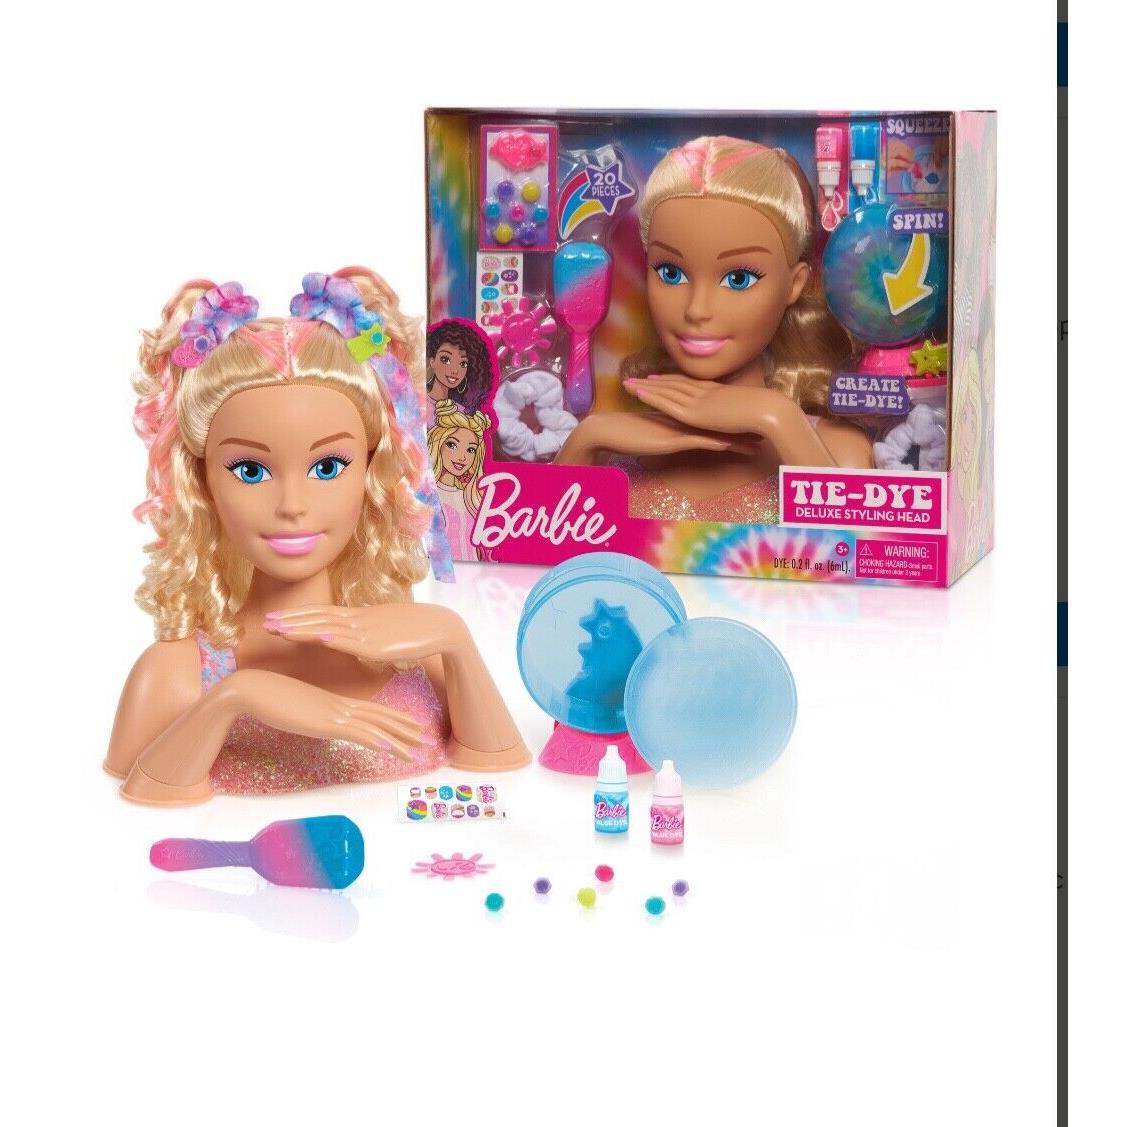 Barbie Tie-dye Deluxe 21-Piece Styling Head Blonde Hair